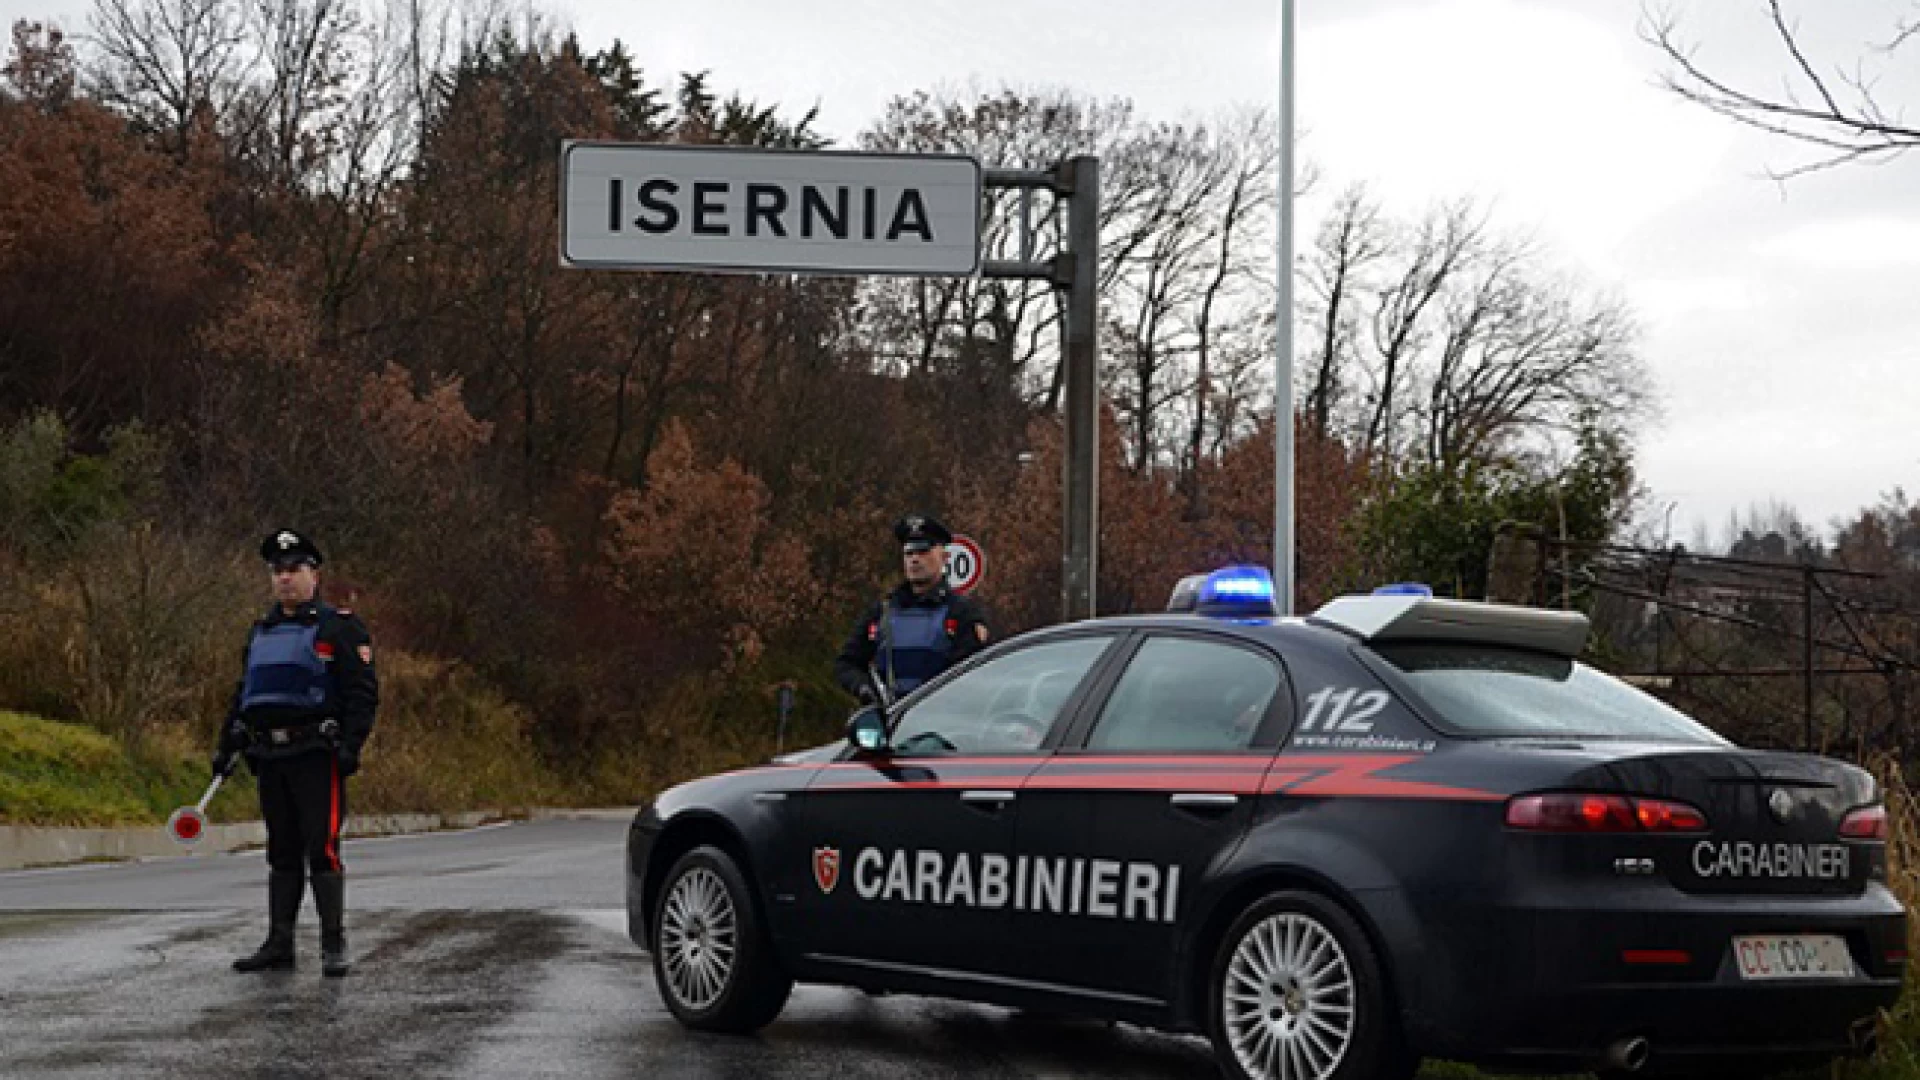 Cantalupo nel Sannio: False residenze per truffare le compagnie assicurative; un campano denunciato dai Carabinieri.